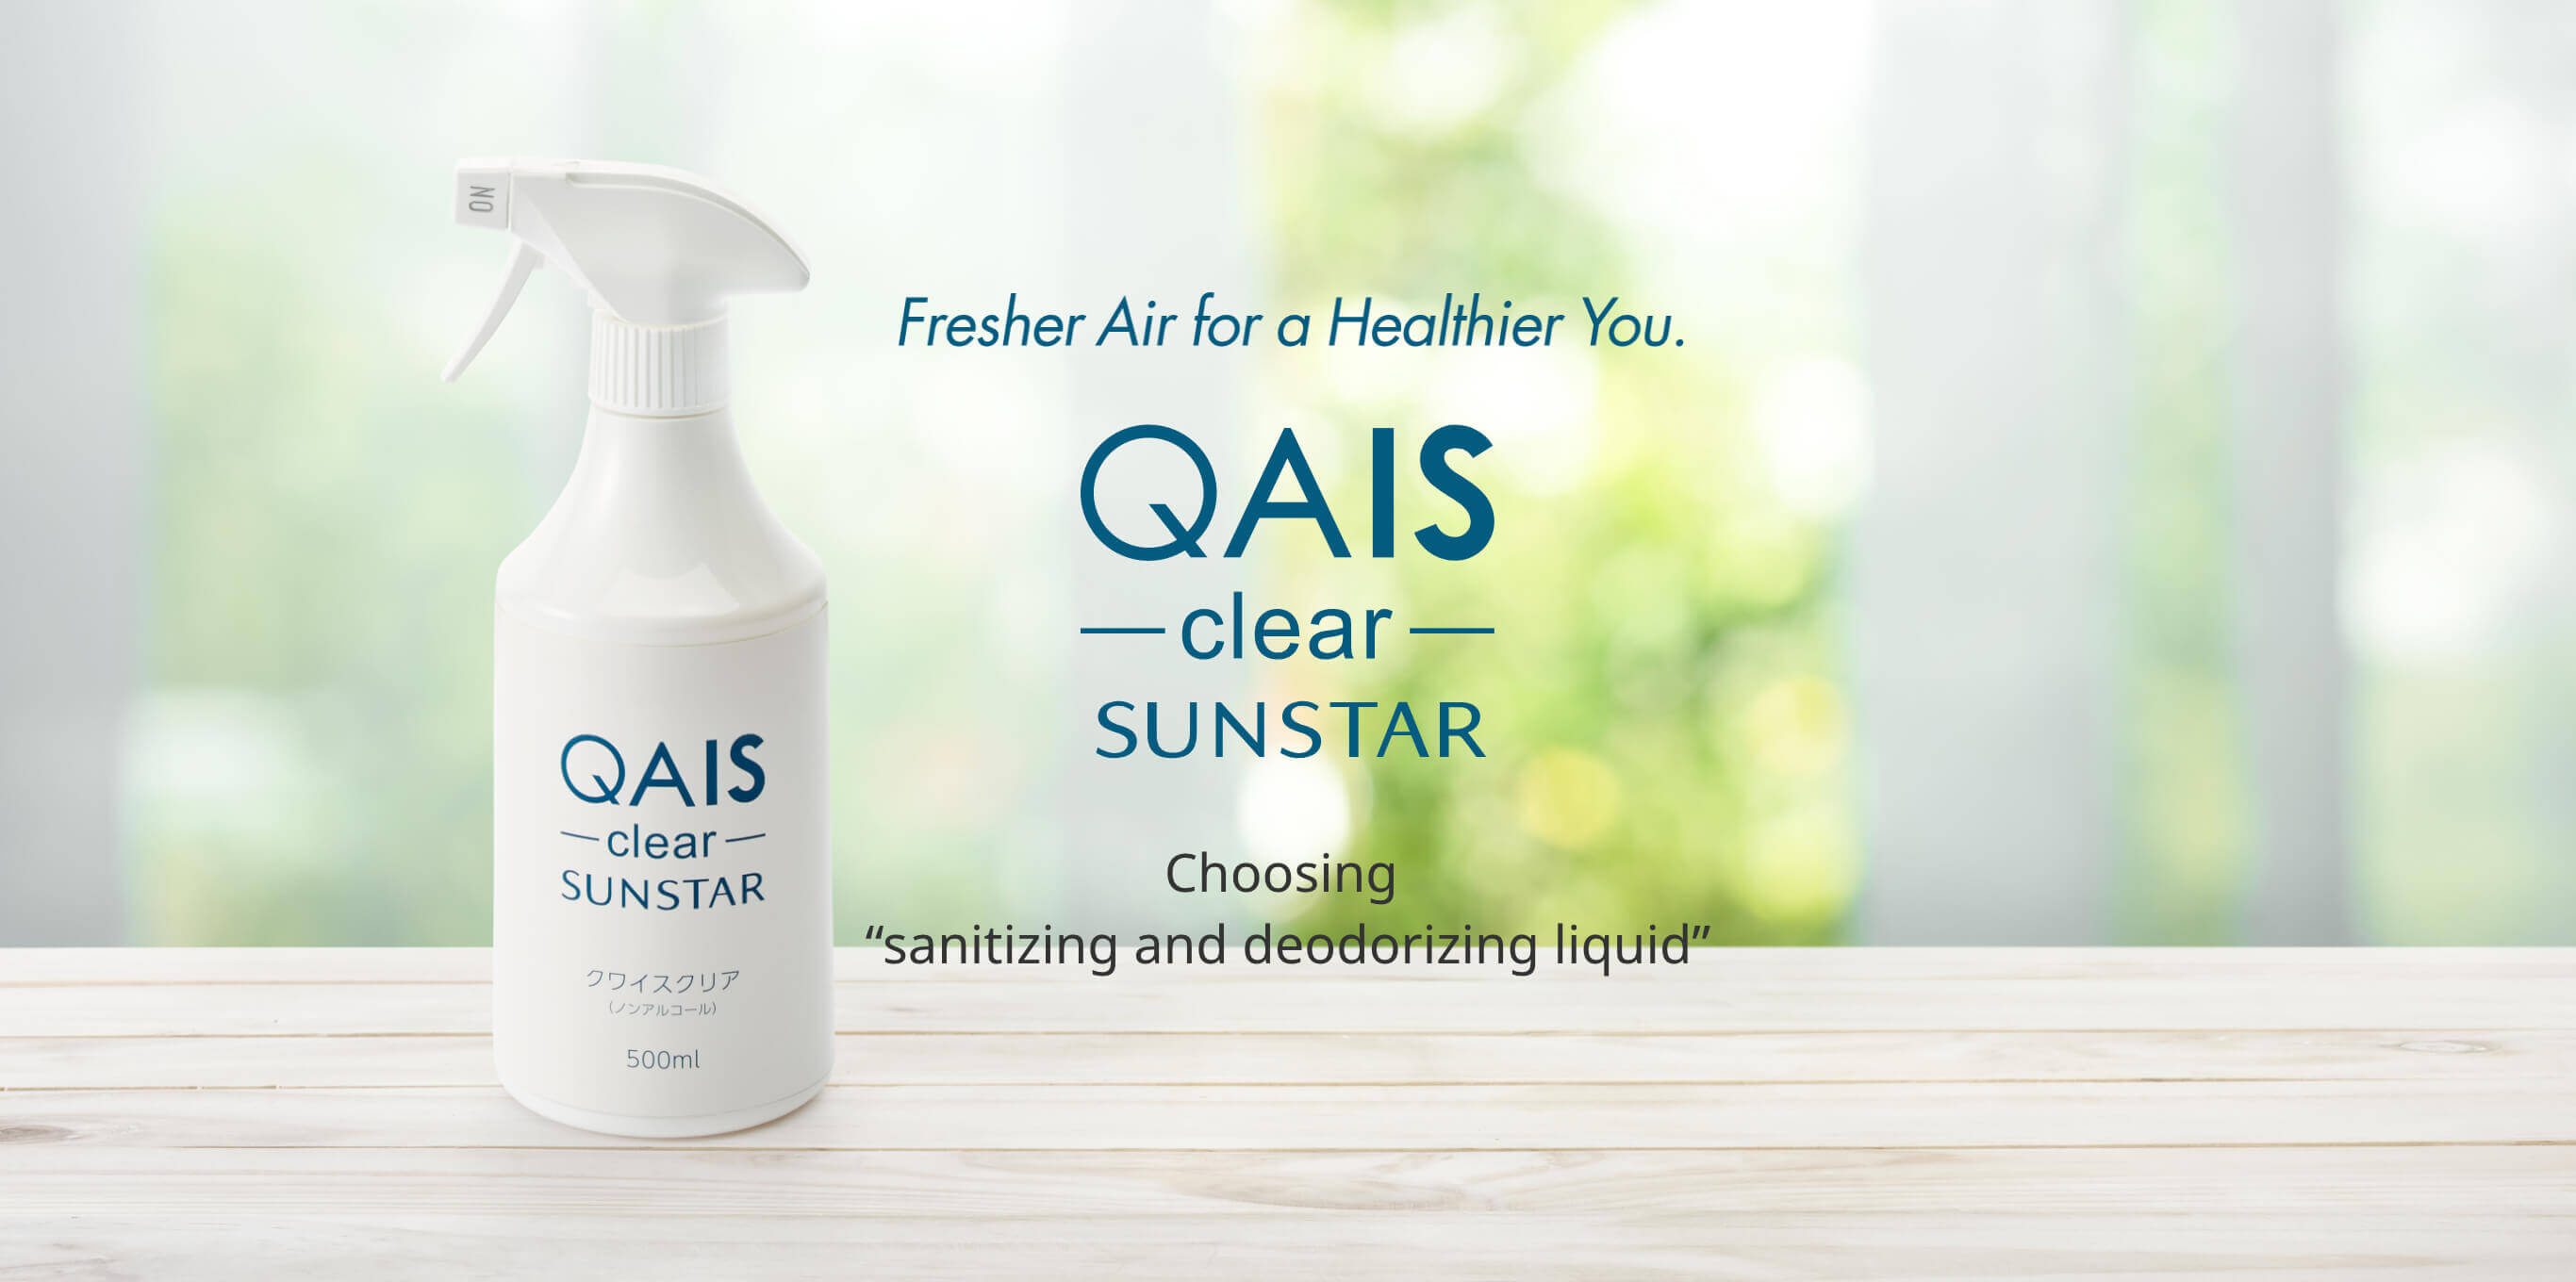 Fresher Air for a Healthier You”  QAIS -clear- SUNSTAR Choosing a sanitizing and deodorizing liquid